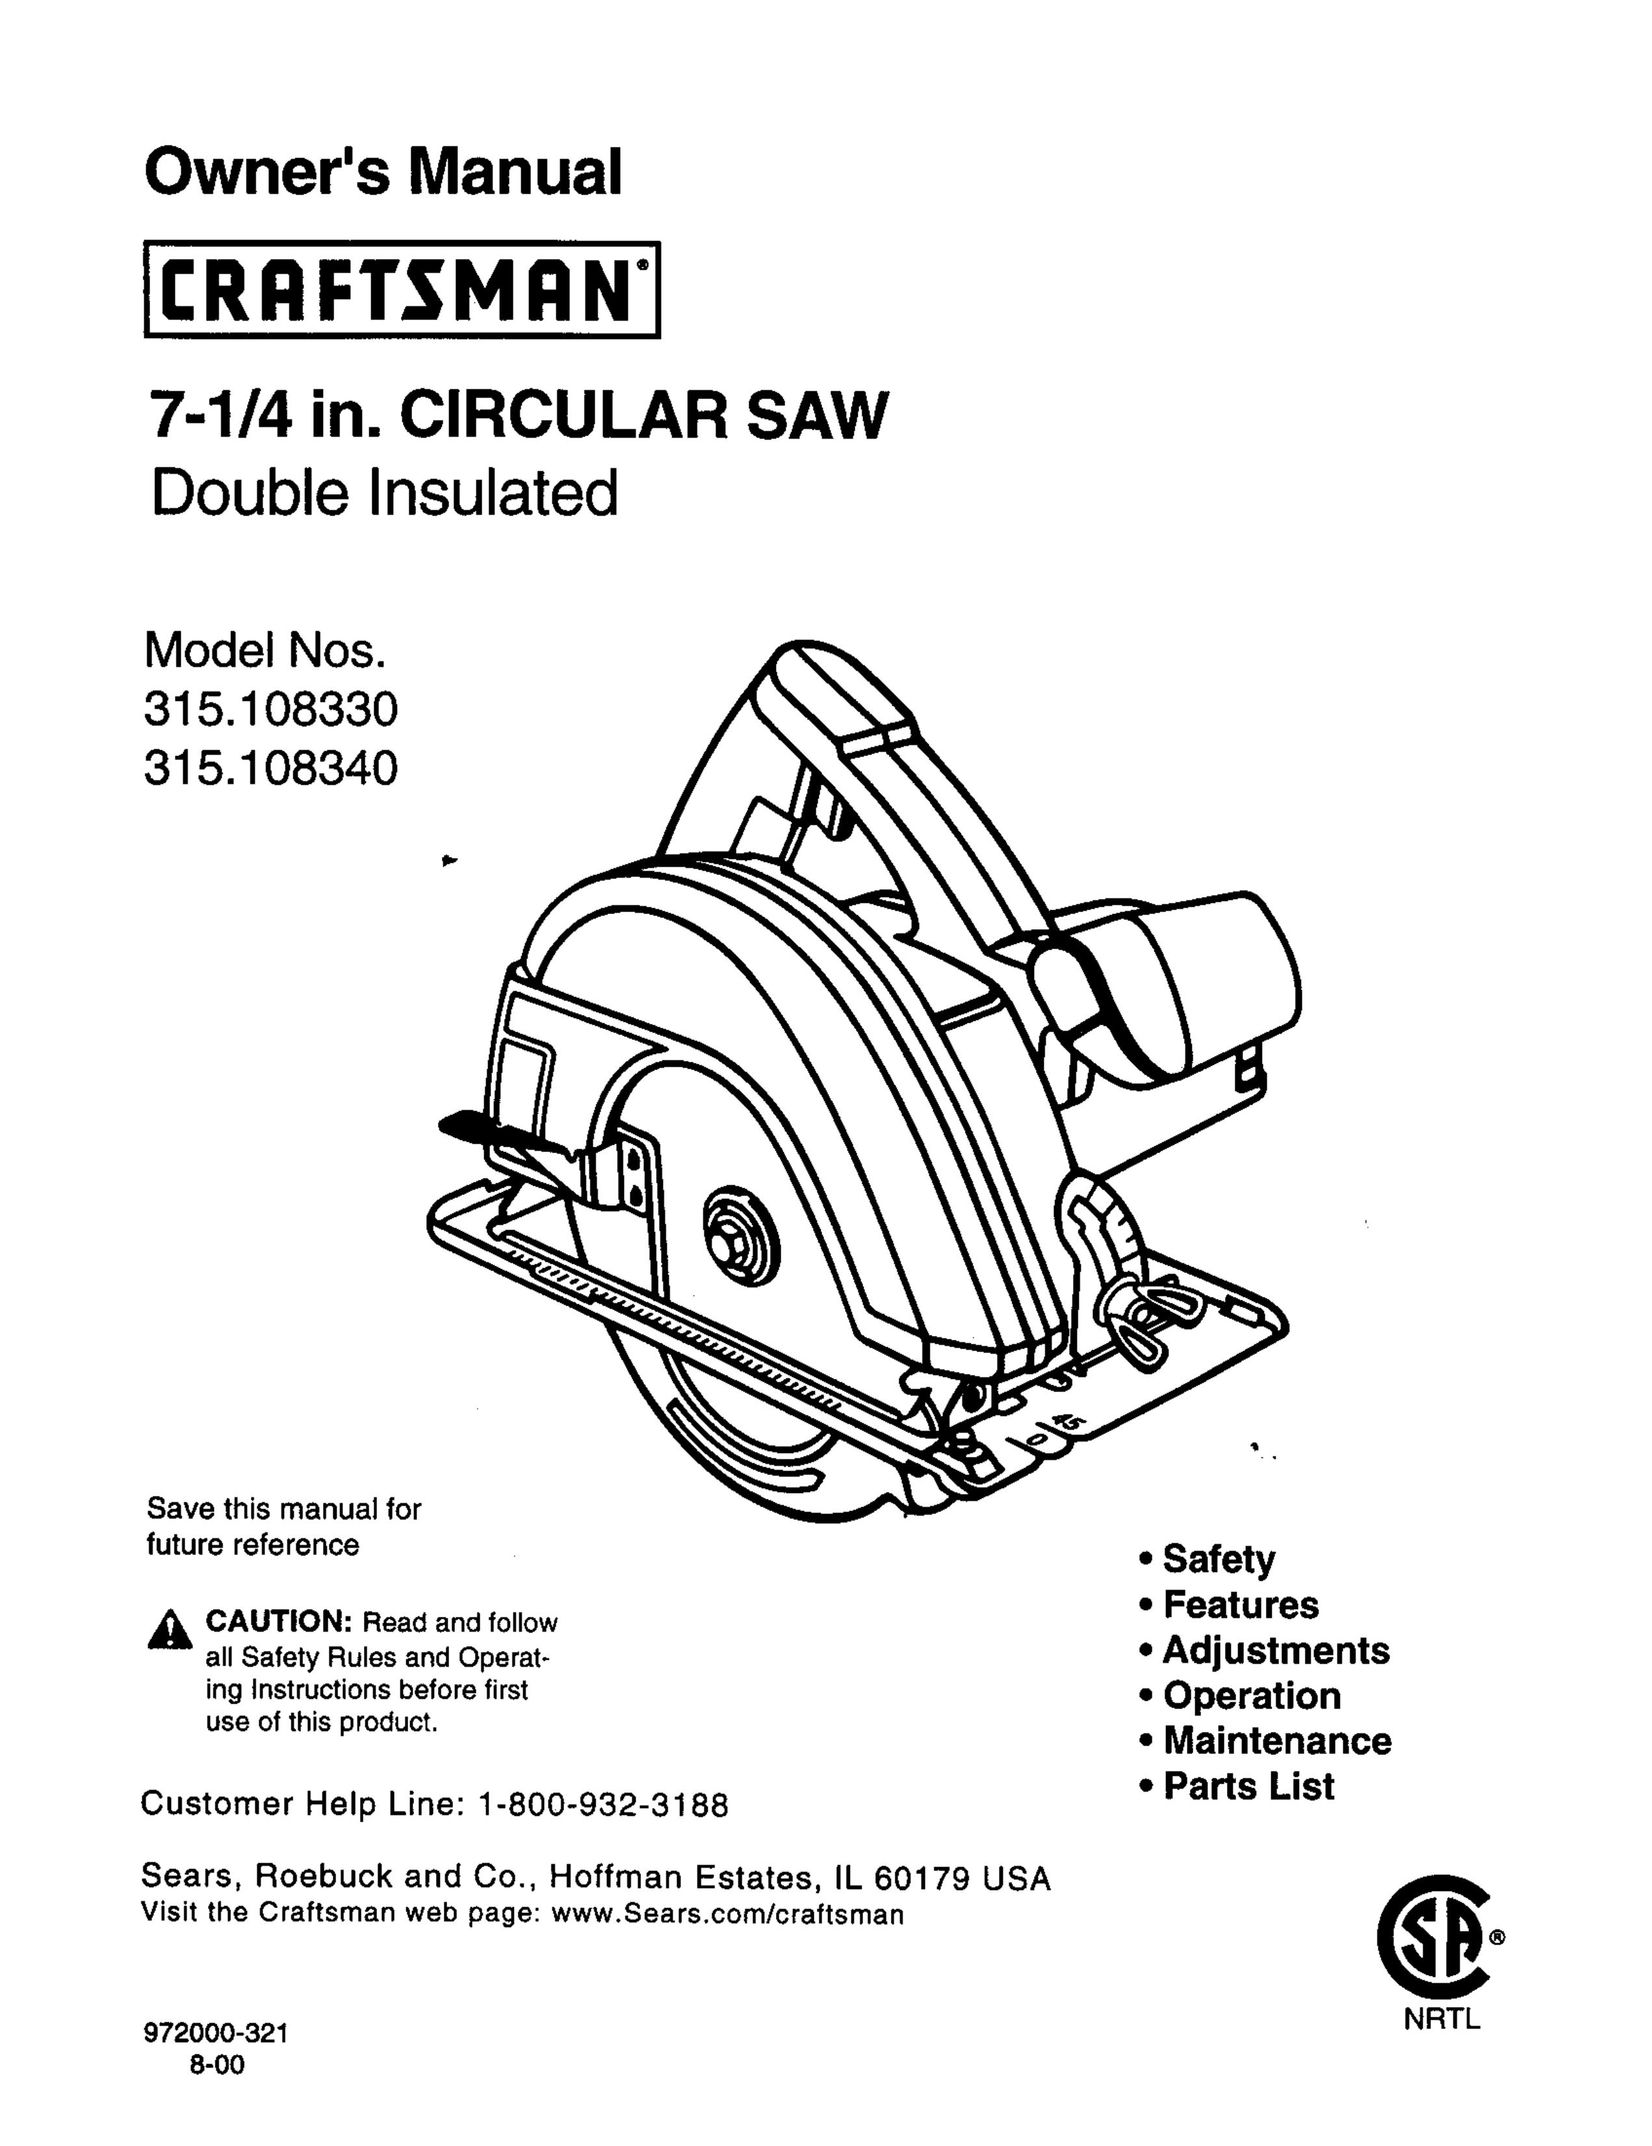 Craftsman 315.10834 Saw User Manual